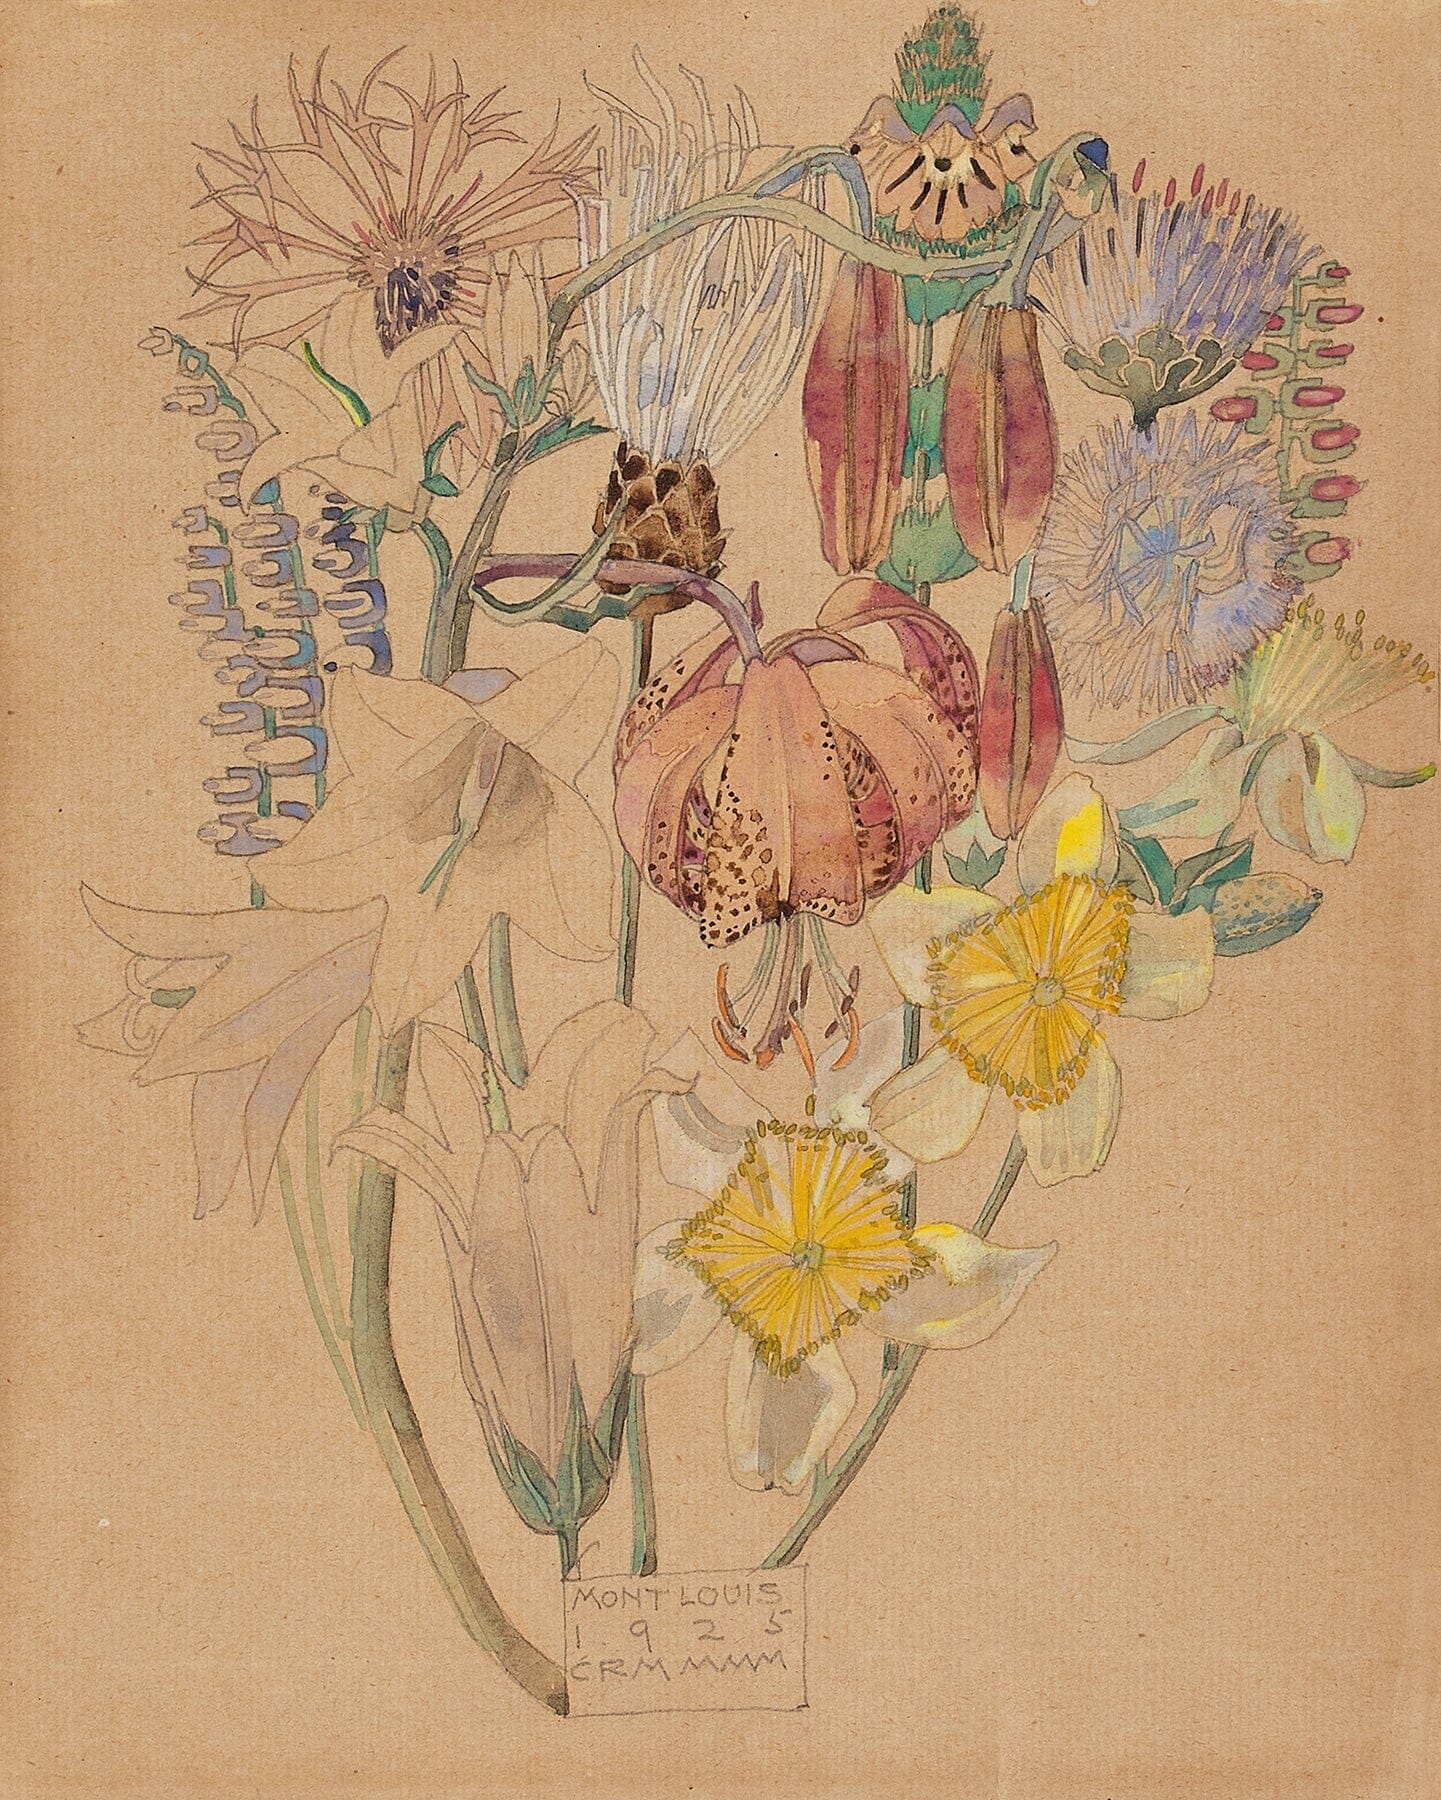 Mont Louis flower study (1920s) | Rennie Mackintosh prints Posters, Prints, & Visual Artwork The Trumpet Shop Vintage Prints   